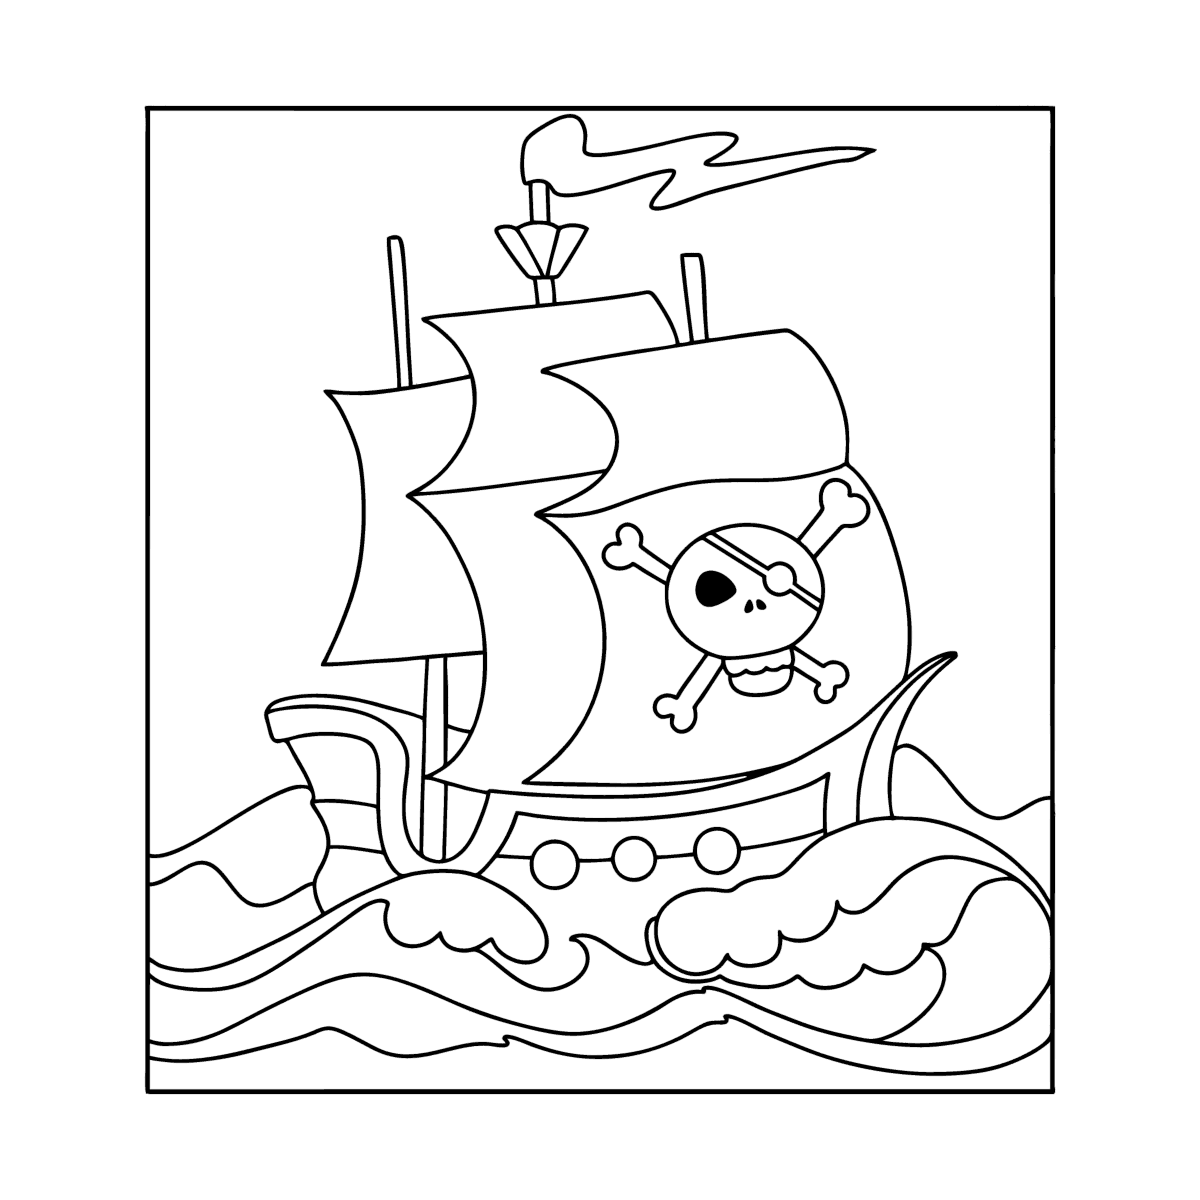 Пиратский корабль раскраска для детей